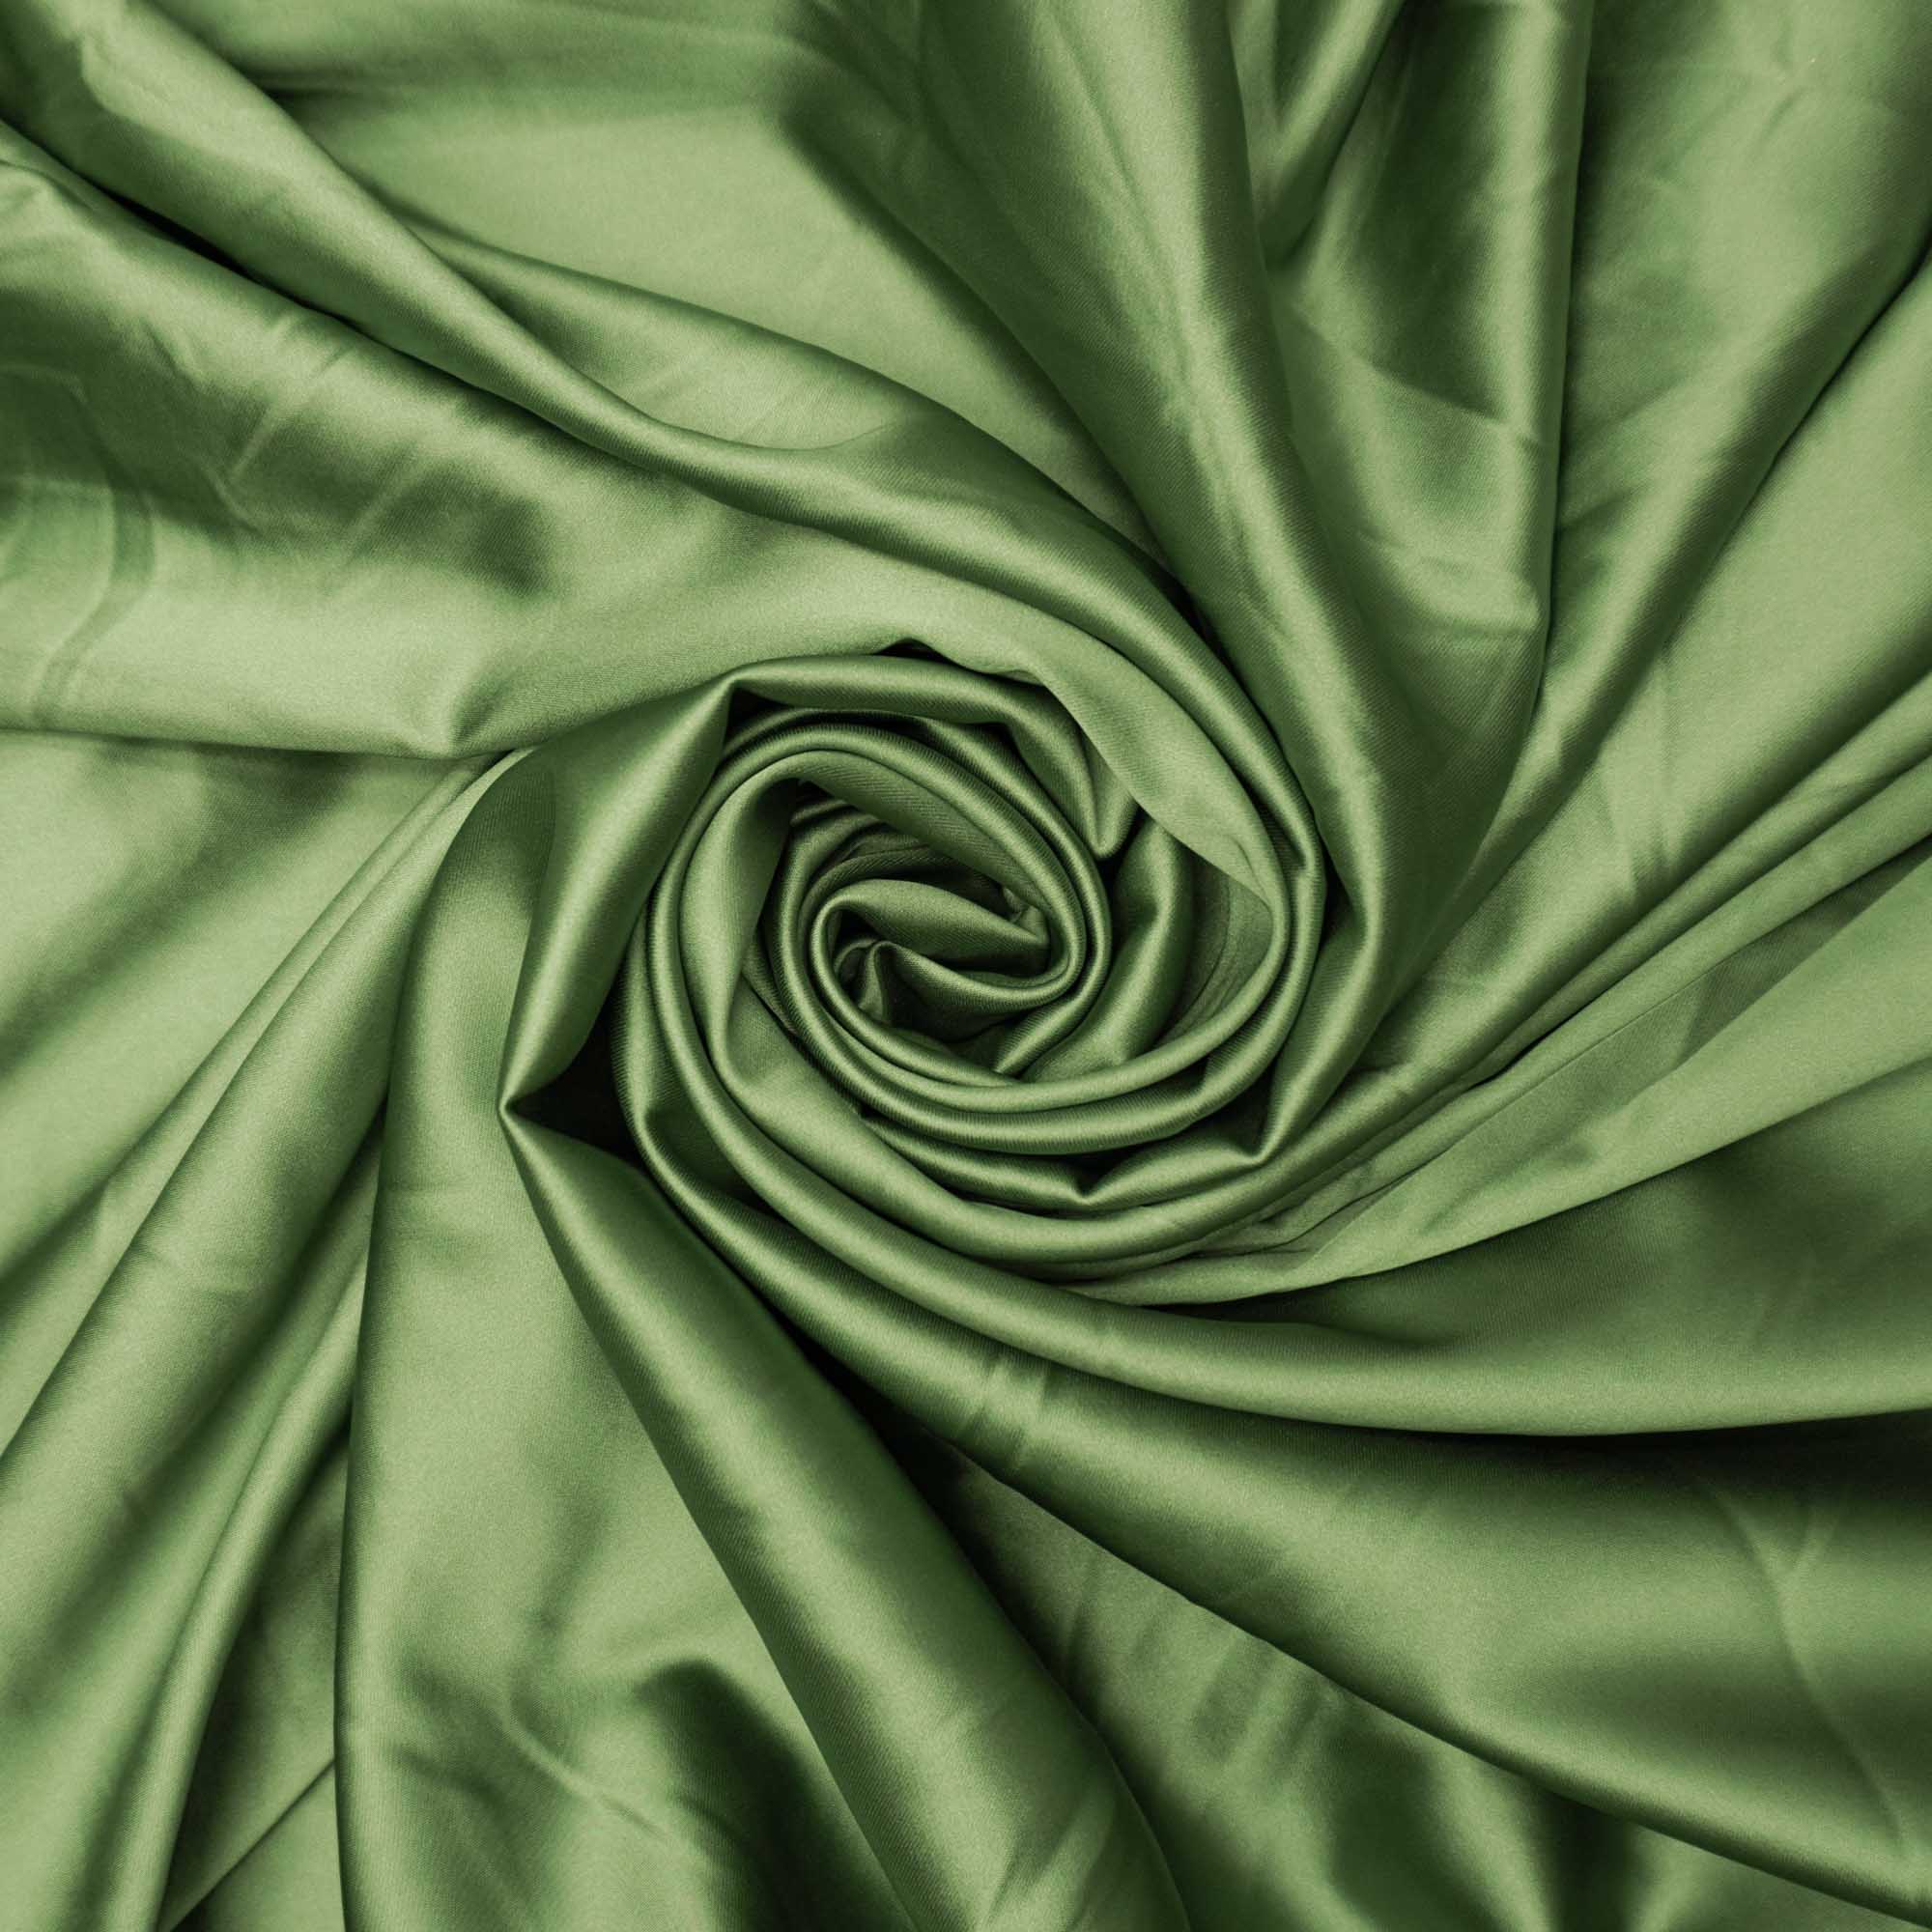 Tecido crepe versailles verde oliva claro